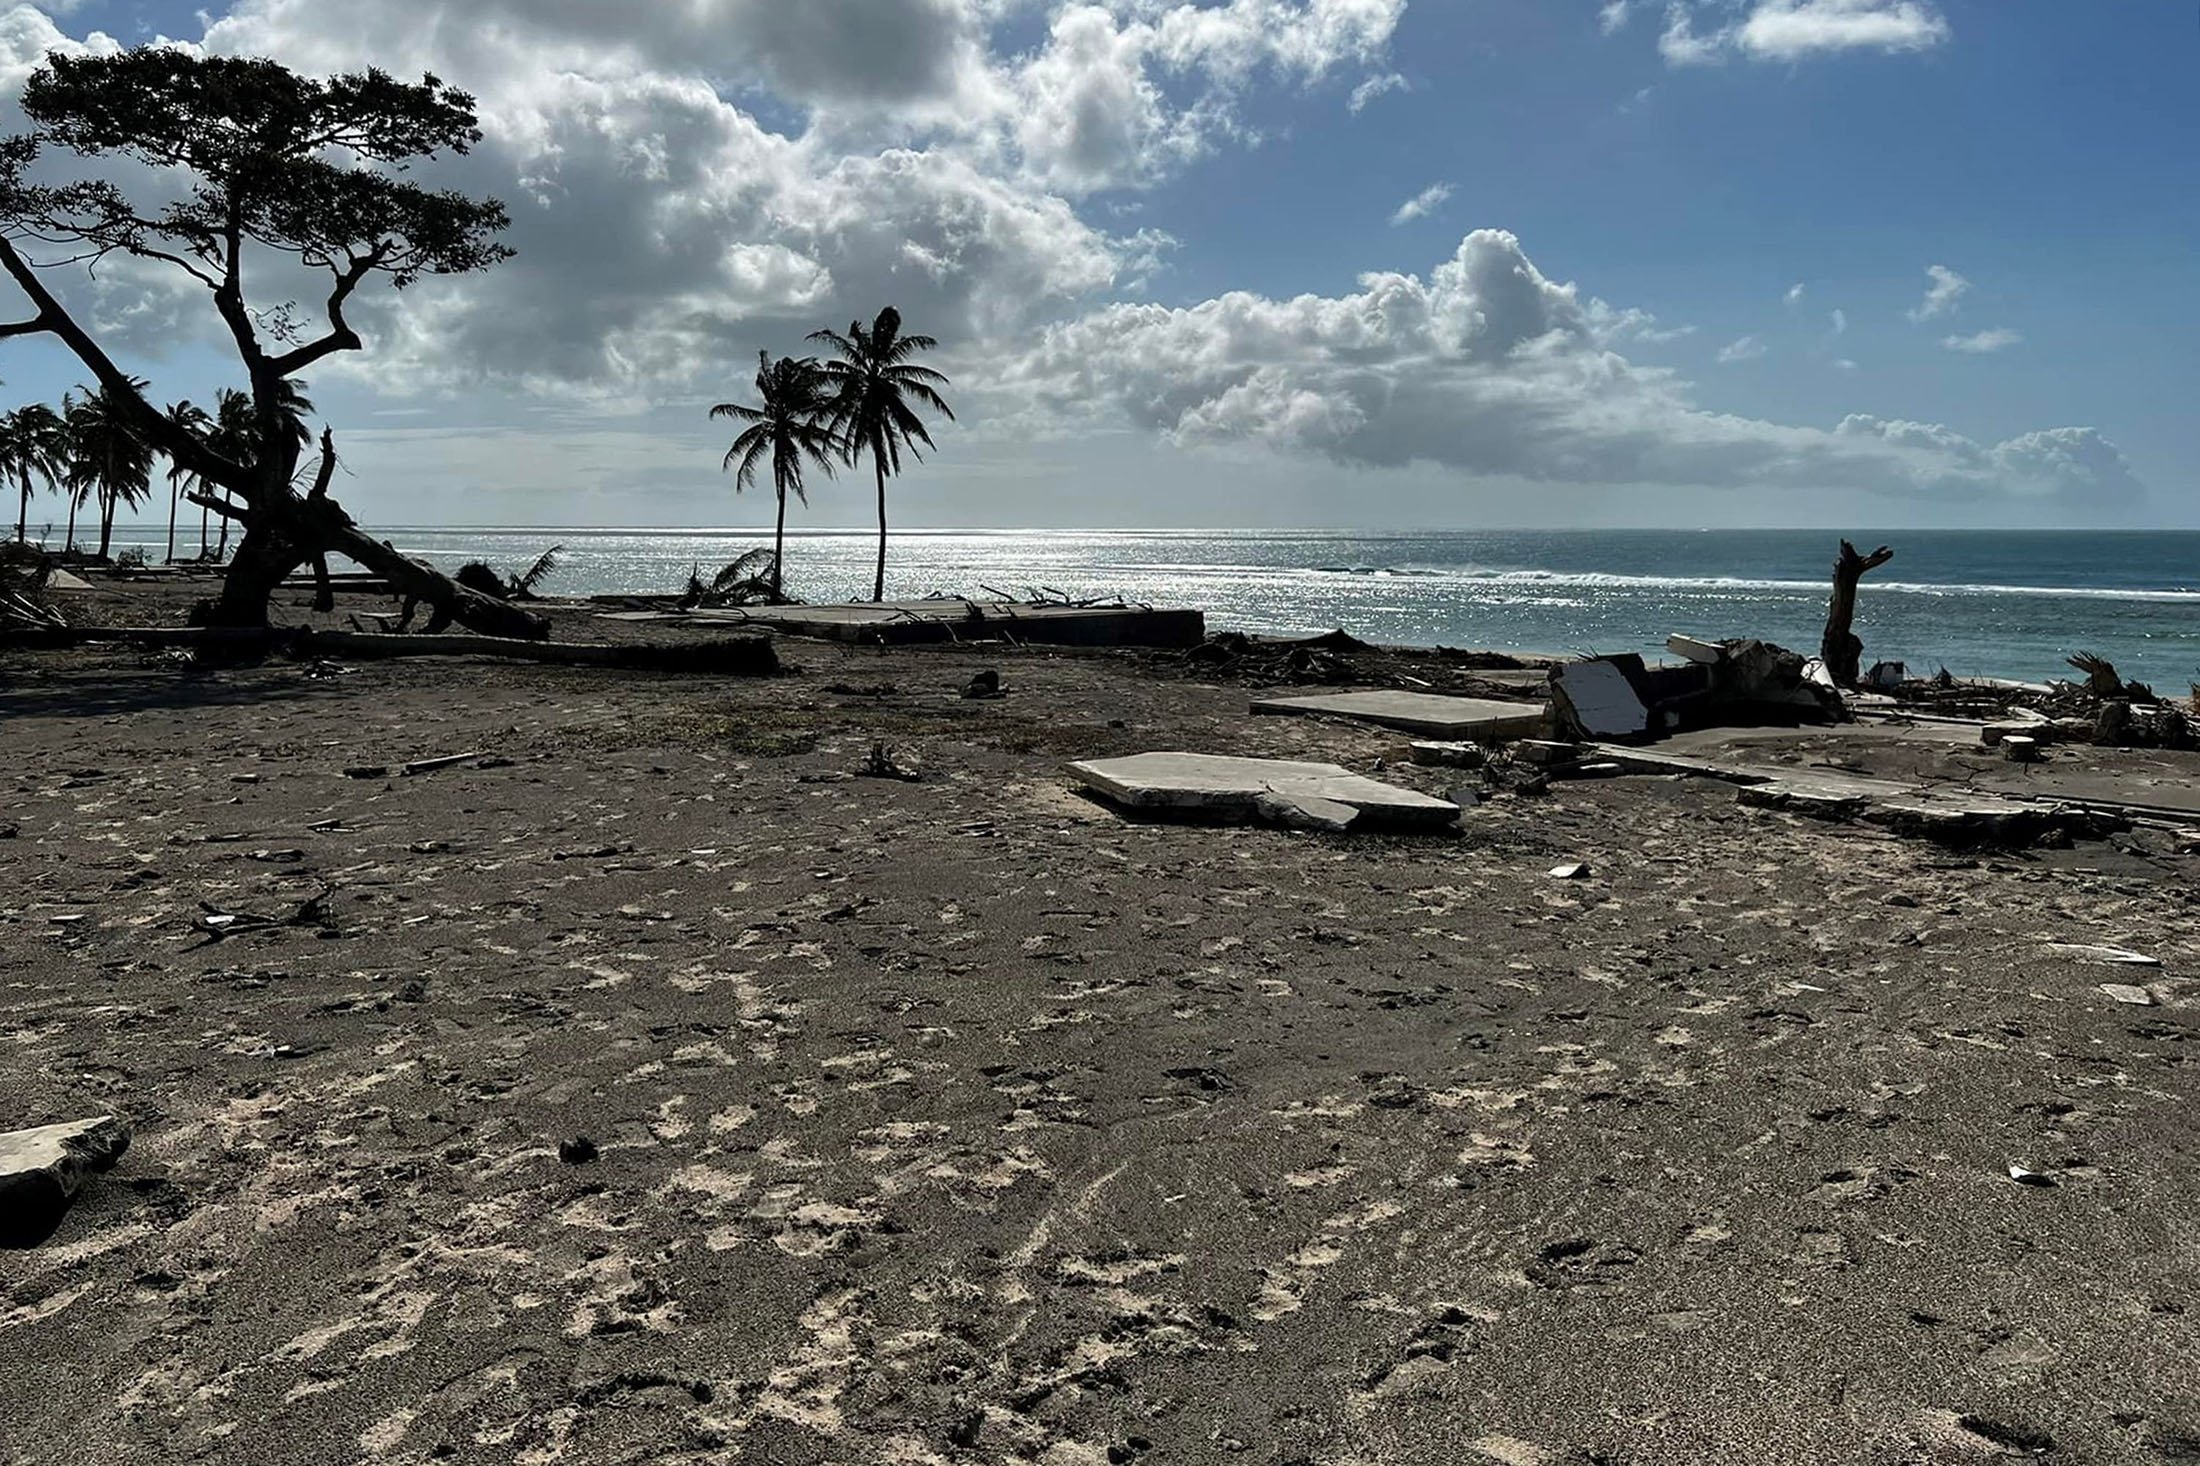 Kehancuran setelah letusan gunung berapi bawah laut Hunga Tonga-Hunga Haiapai dapat dilihat di sepanjang pantai barat pulau utama Tongatapu, di Tonga, Jan.  20, 2022. (Viliami Uasike Latu via AFP)